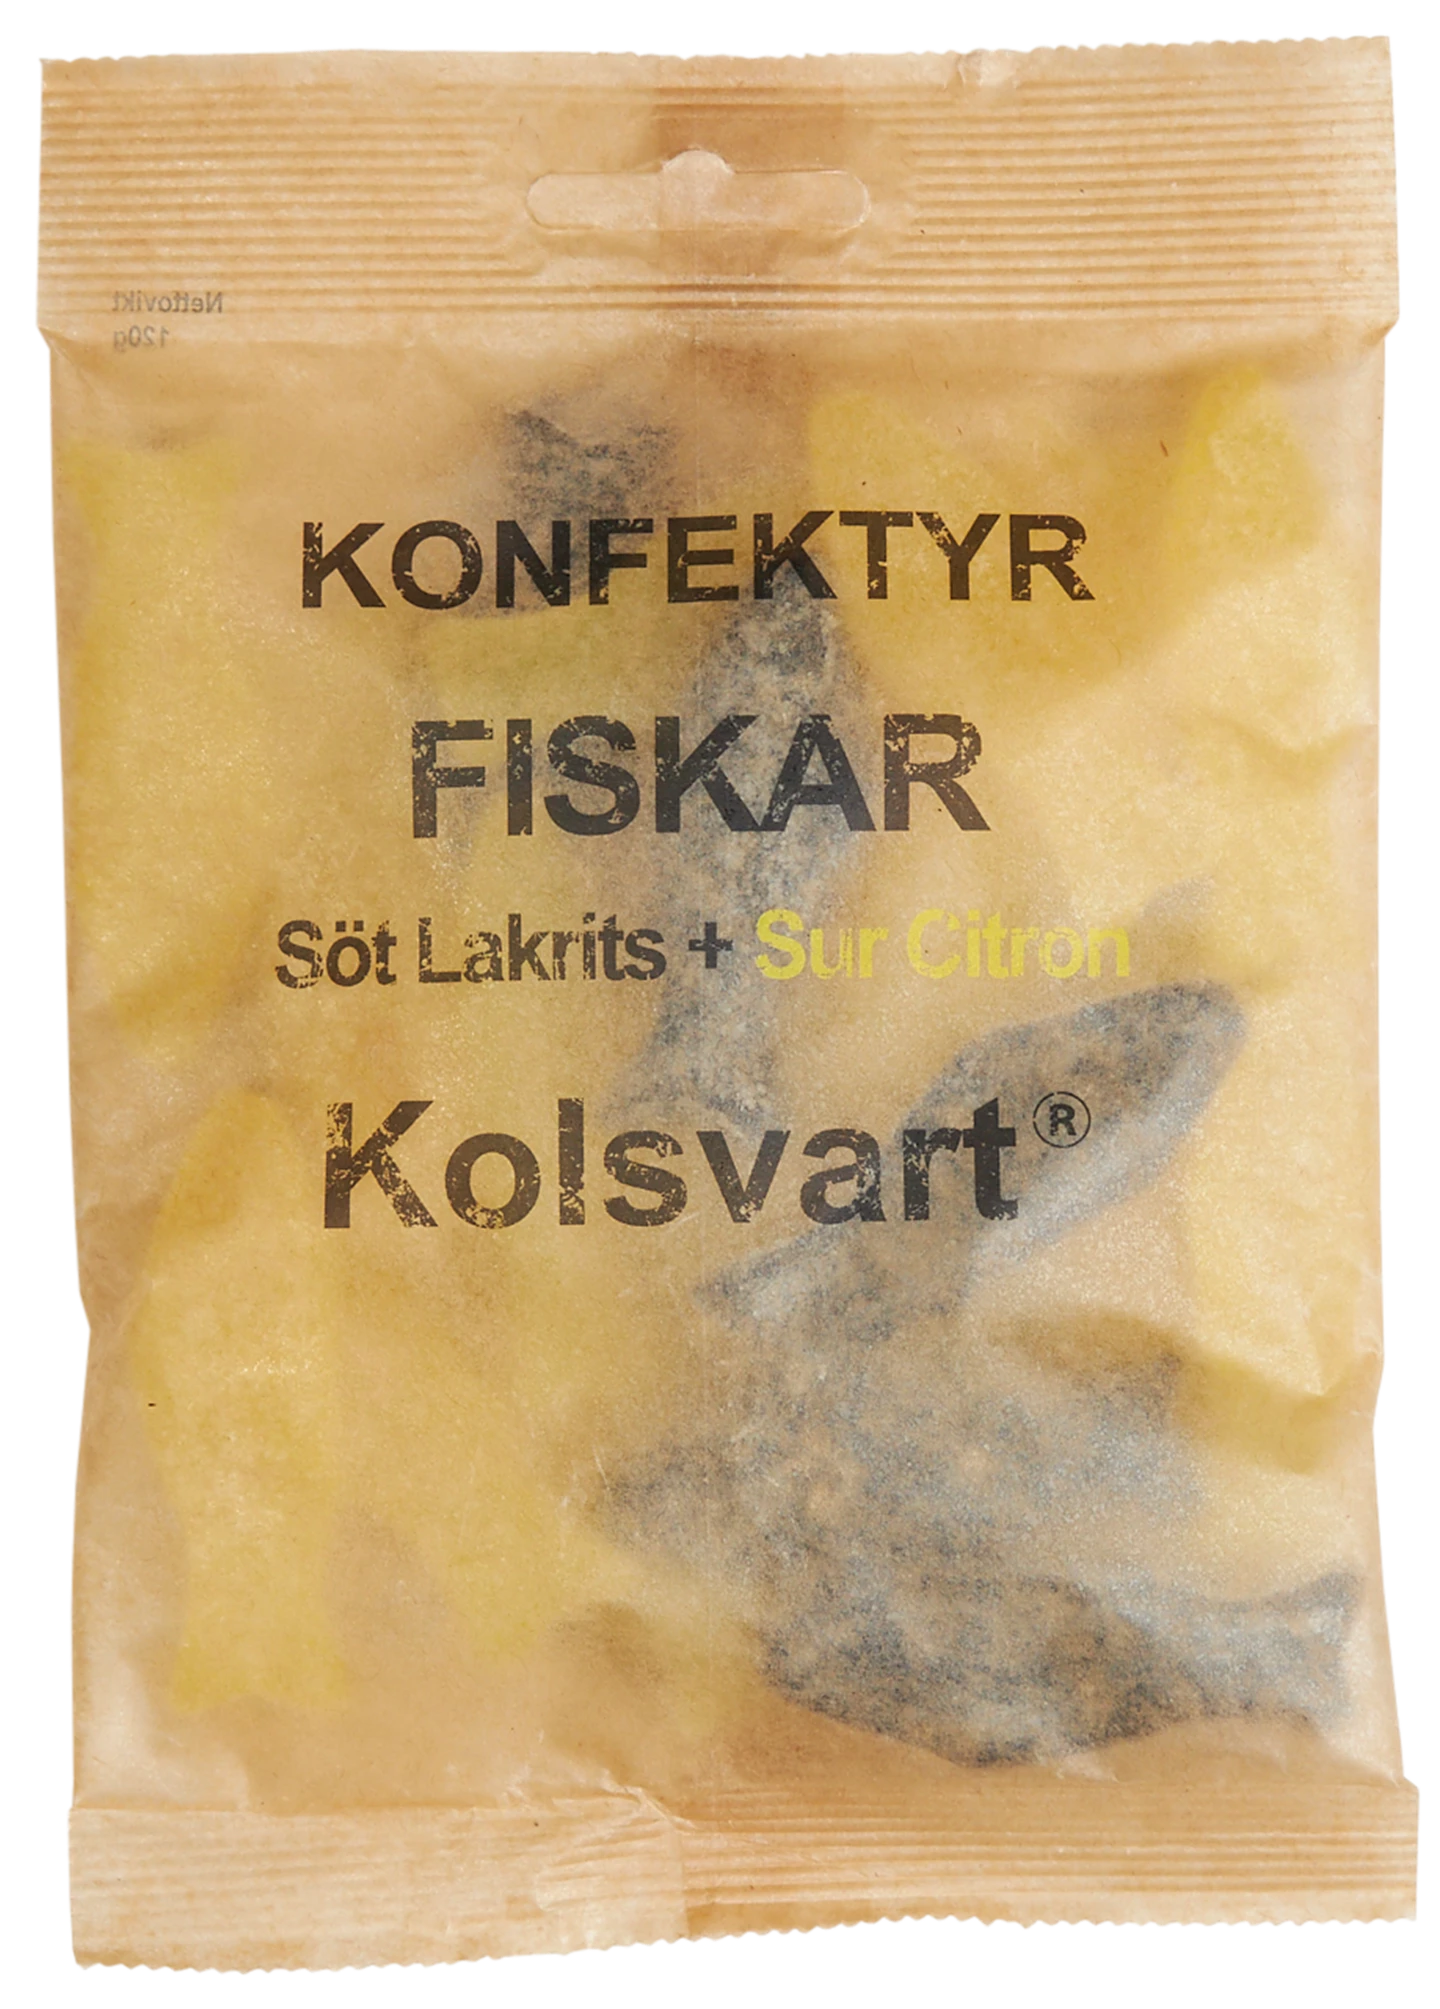 Løgismose Delikatesser Kolsvart Sur citron & sød lakrids fisk 120g - 216155